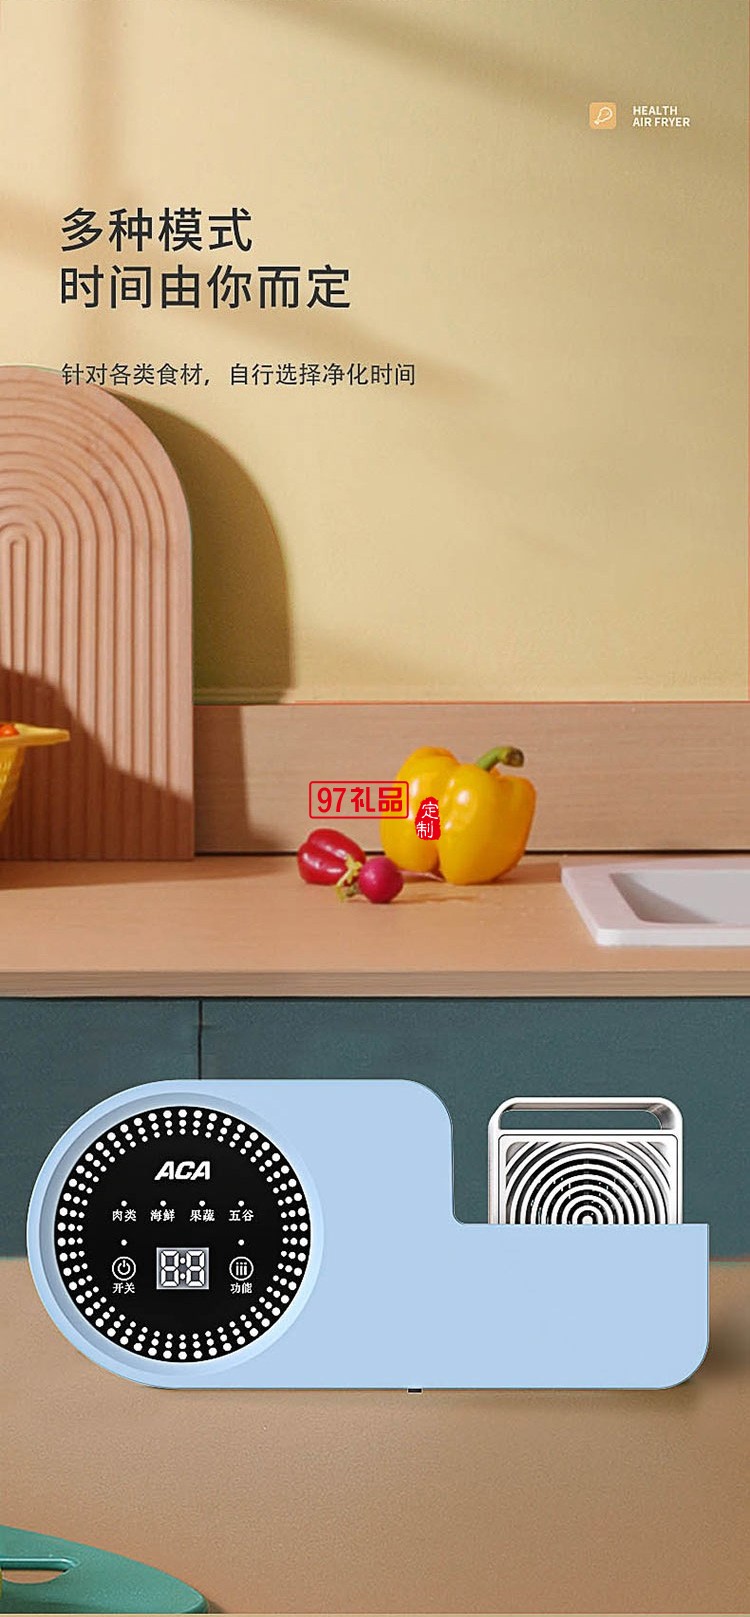  食材净化器 洗机家用杀菌便携ALY-H48GS01D定制公司广告礼品